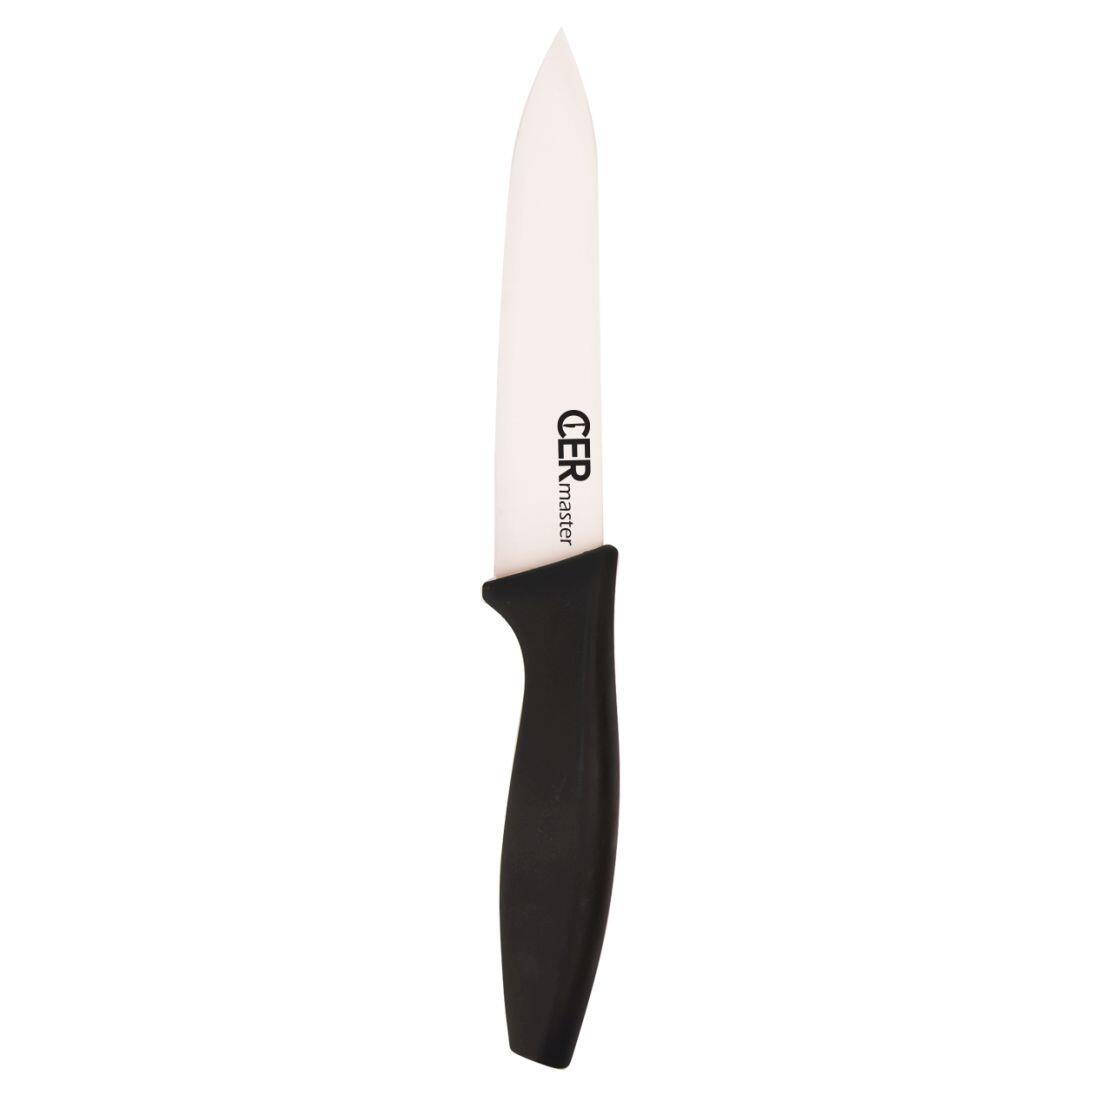 nůž keramický 12,5cm univerzální CERMASTER 0.06 Kg MAXMIX Sklad14 282160 8